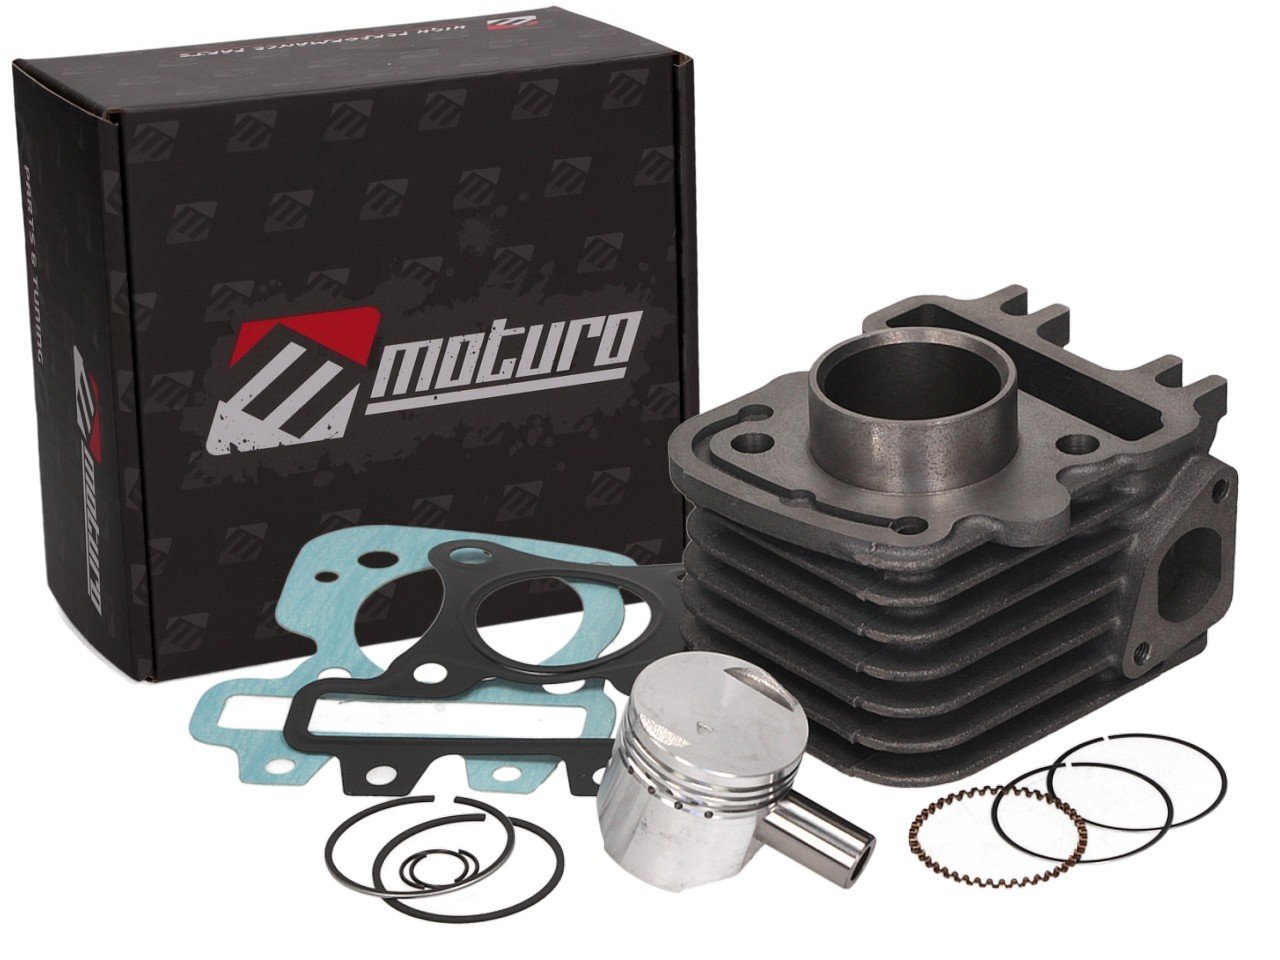 Moturo Zylinder Kit für Piaggio Motoren 50ccm luftgekühlt 4t von Moturo